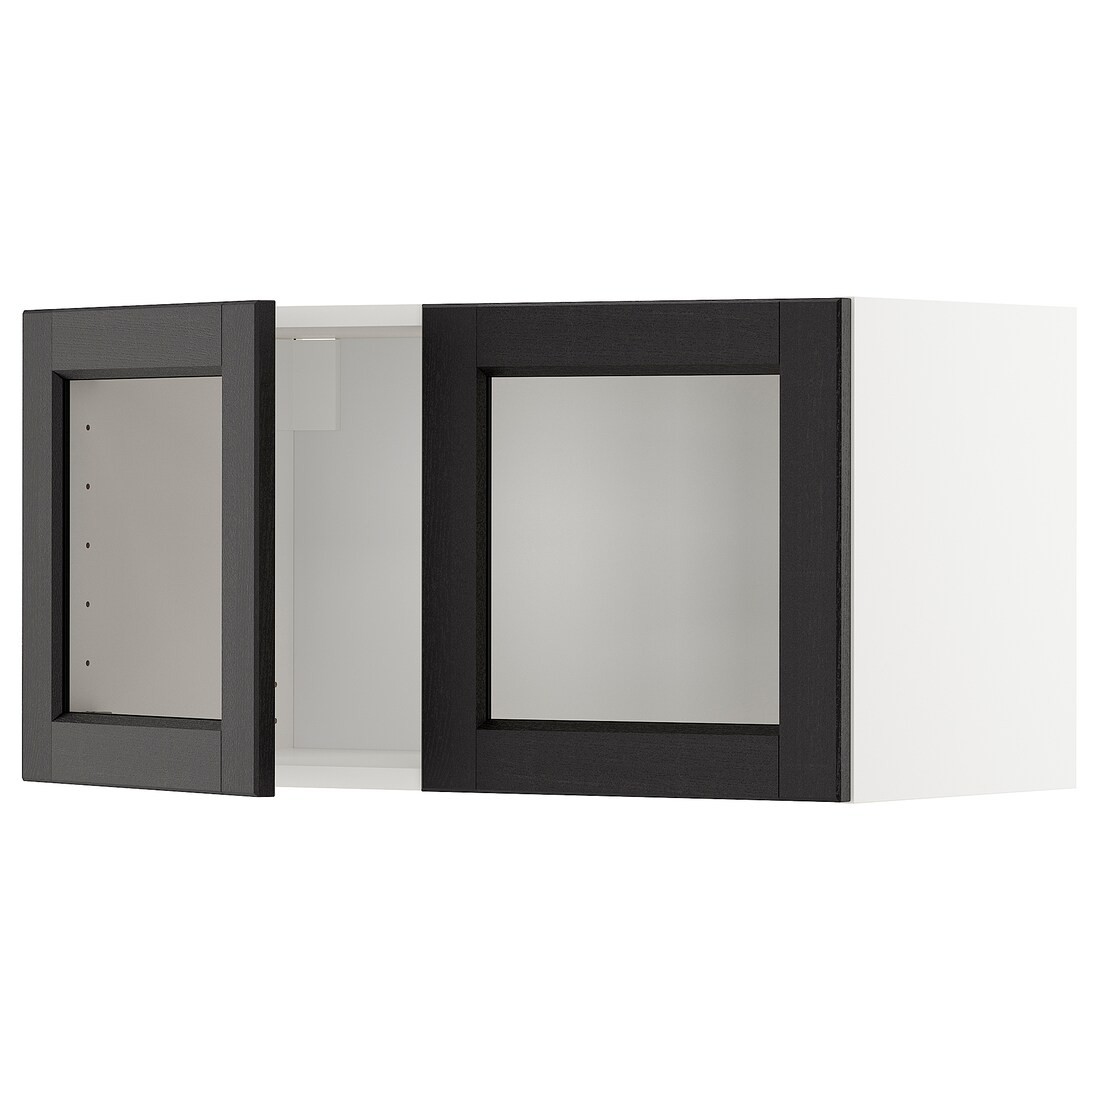 METOD МЕТОД Навесной шкаф / 2 стеклянные дверцы, белый / Lerhyttan черная морилка, 80x40 см